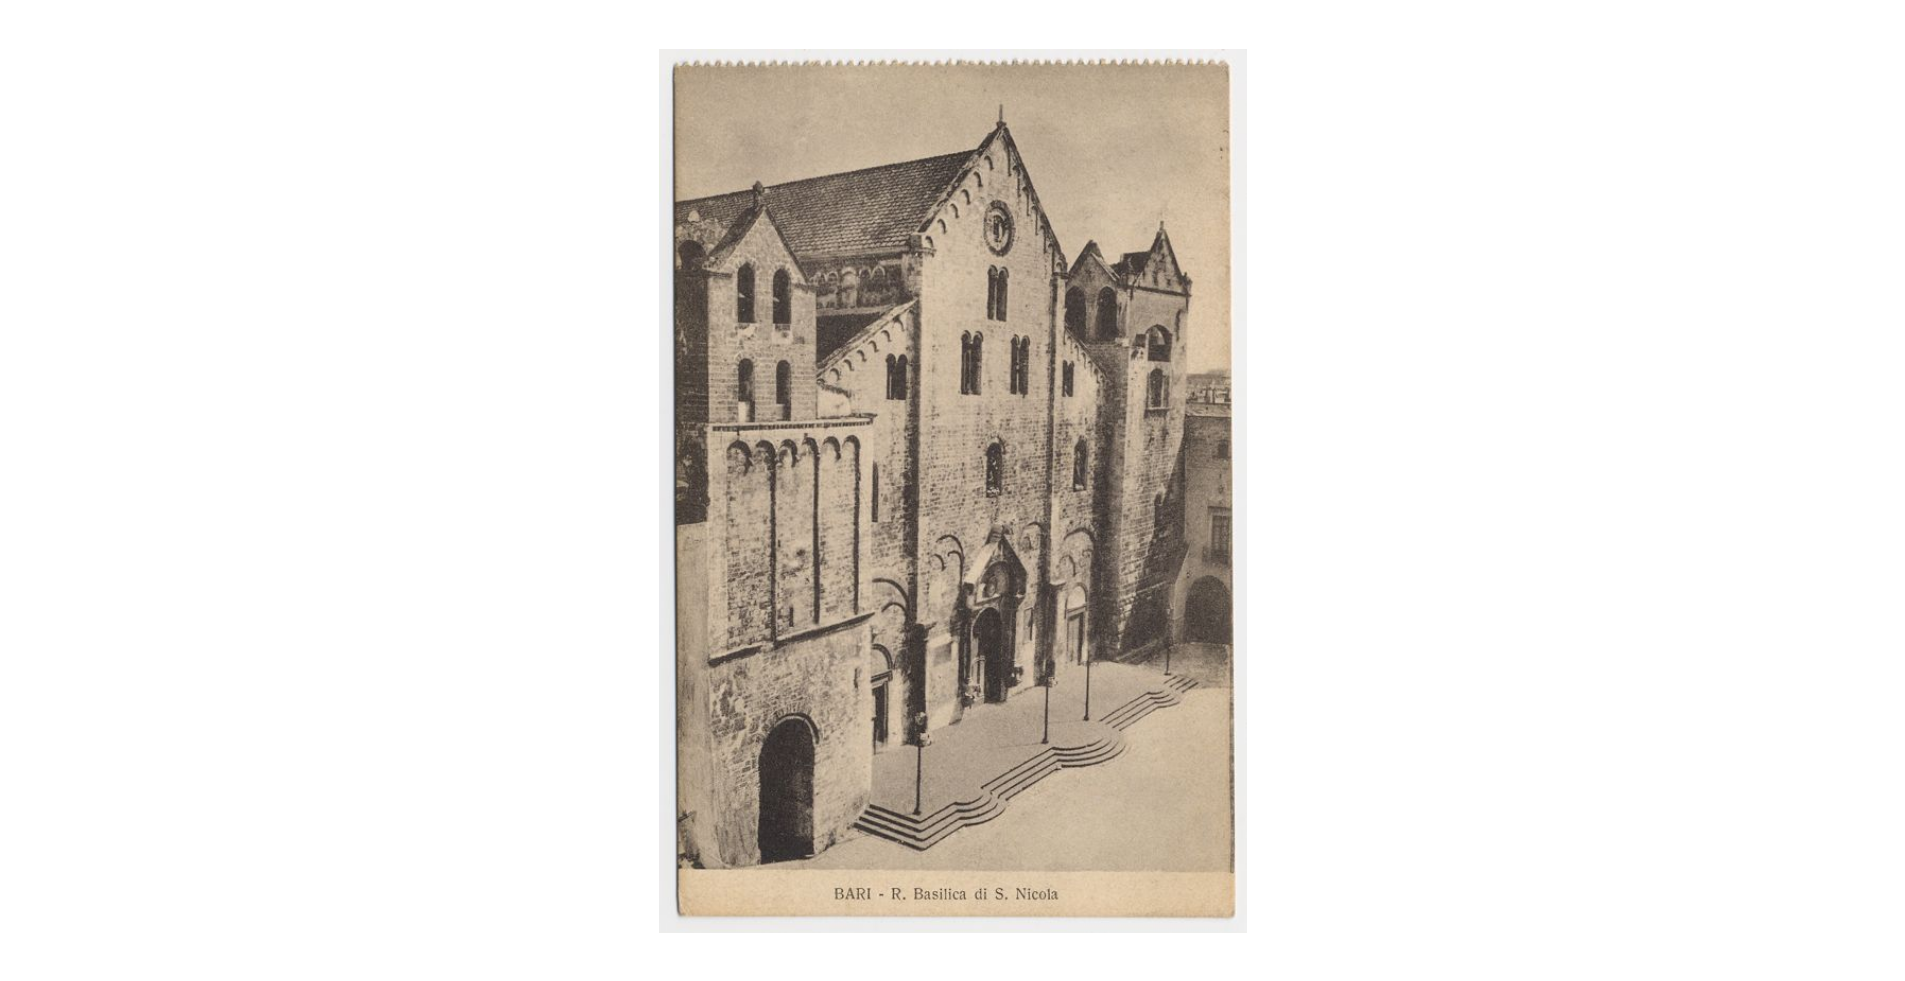 Fotografo non identificato, Bari - Basilica di S. Nicola di Bari, 1917, cartolina, FFC013997